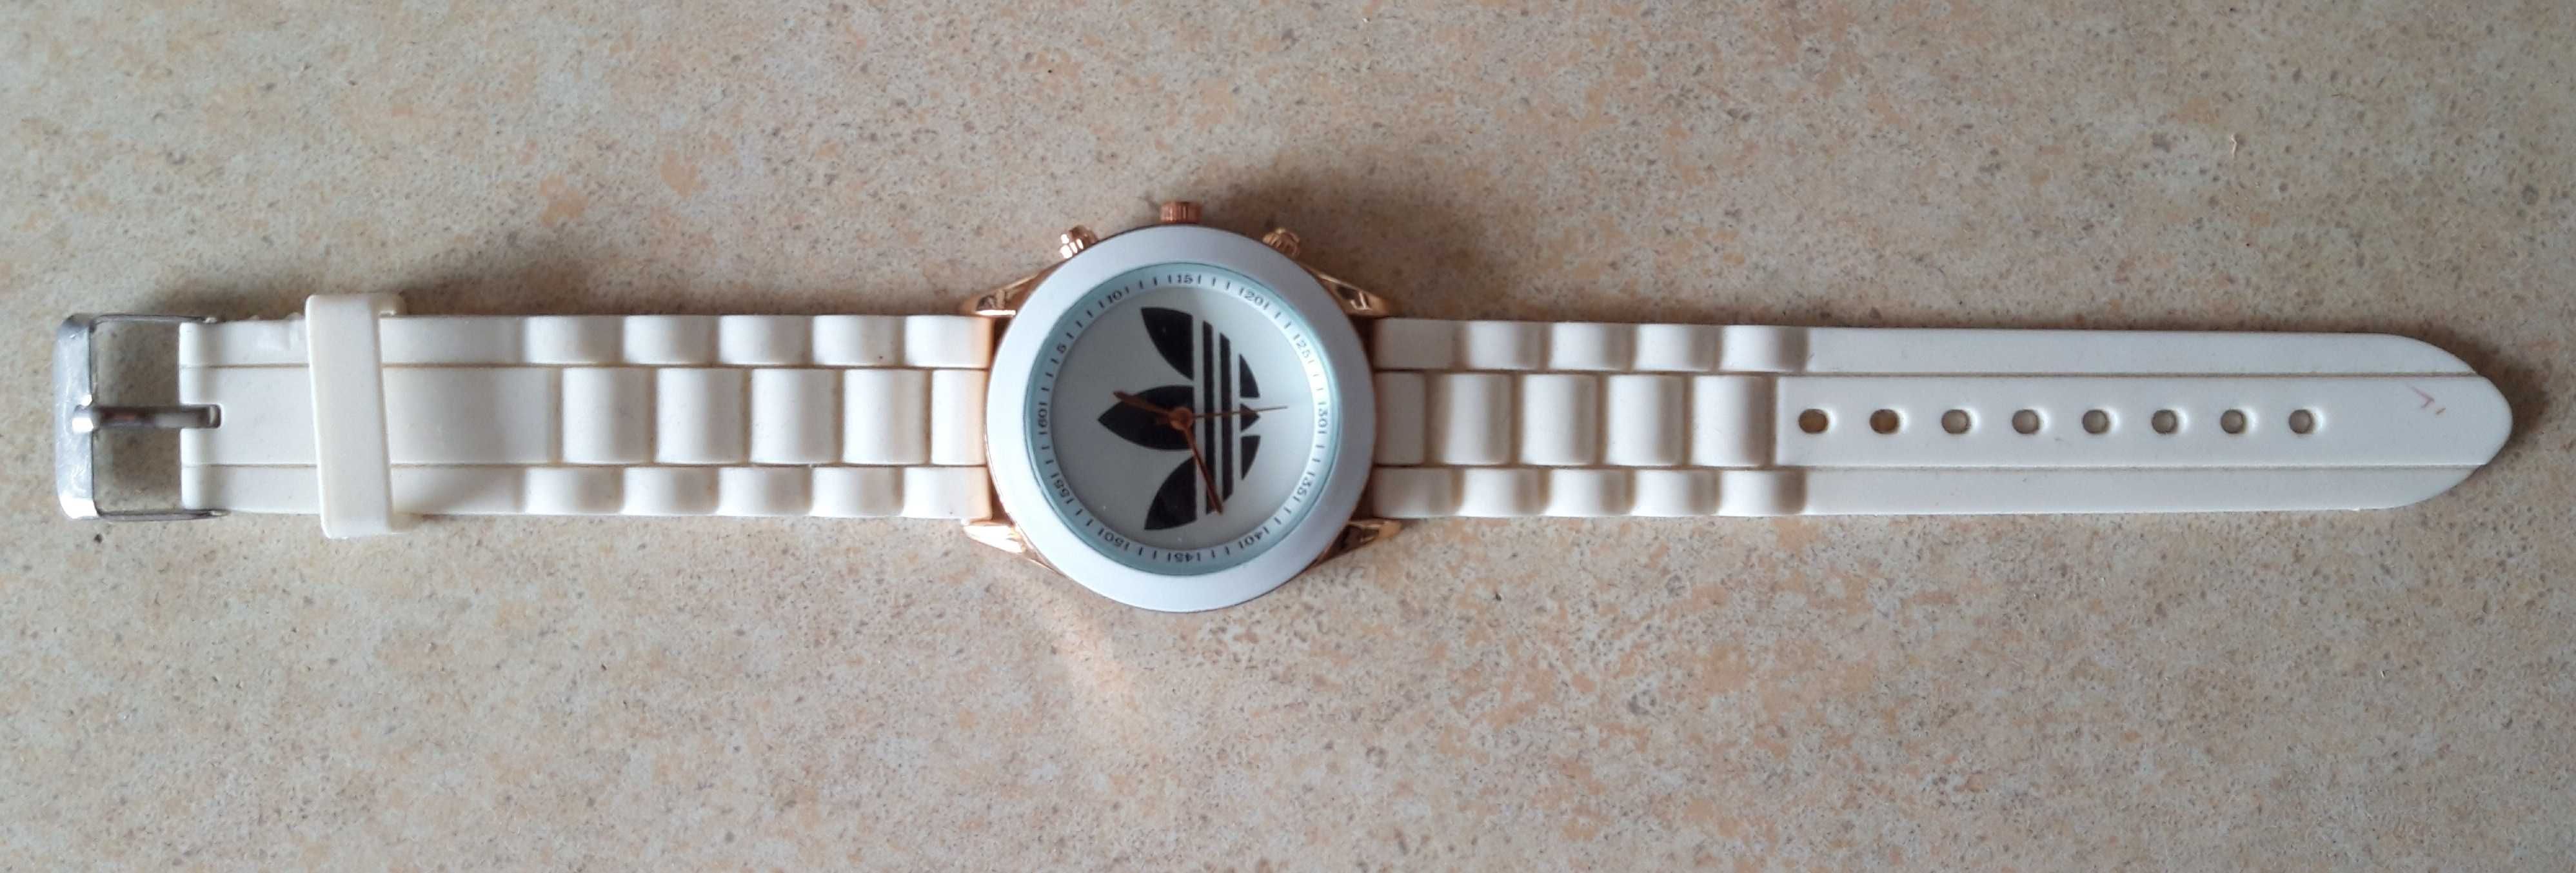 Zegarek Adidas sprawny ecru biały